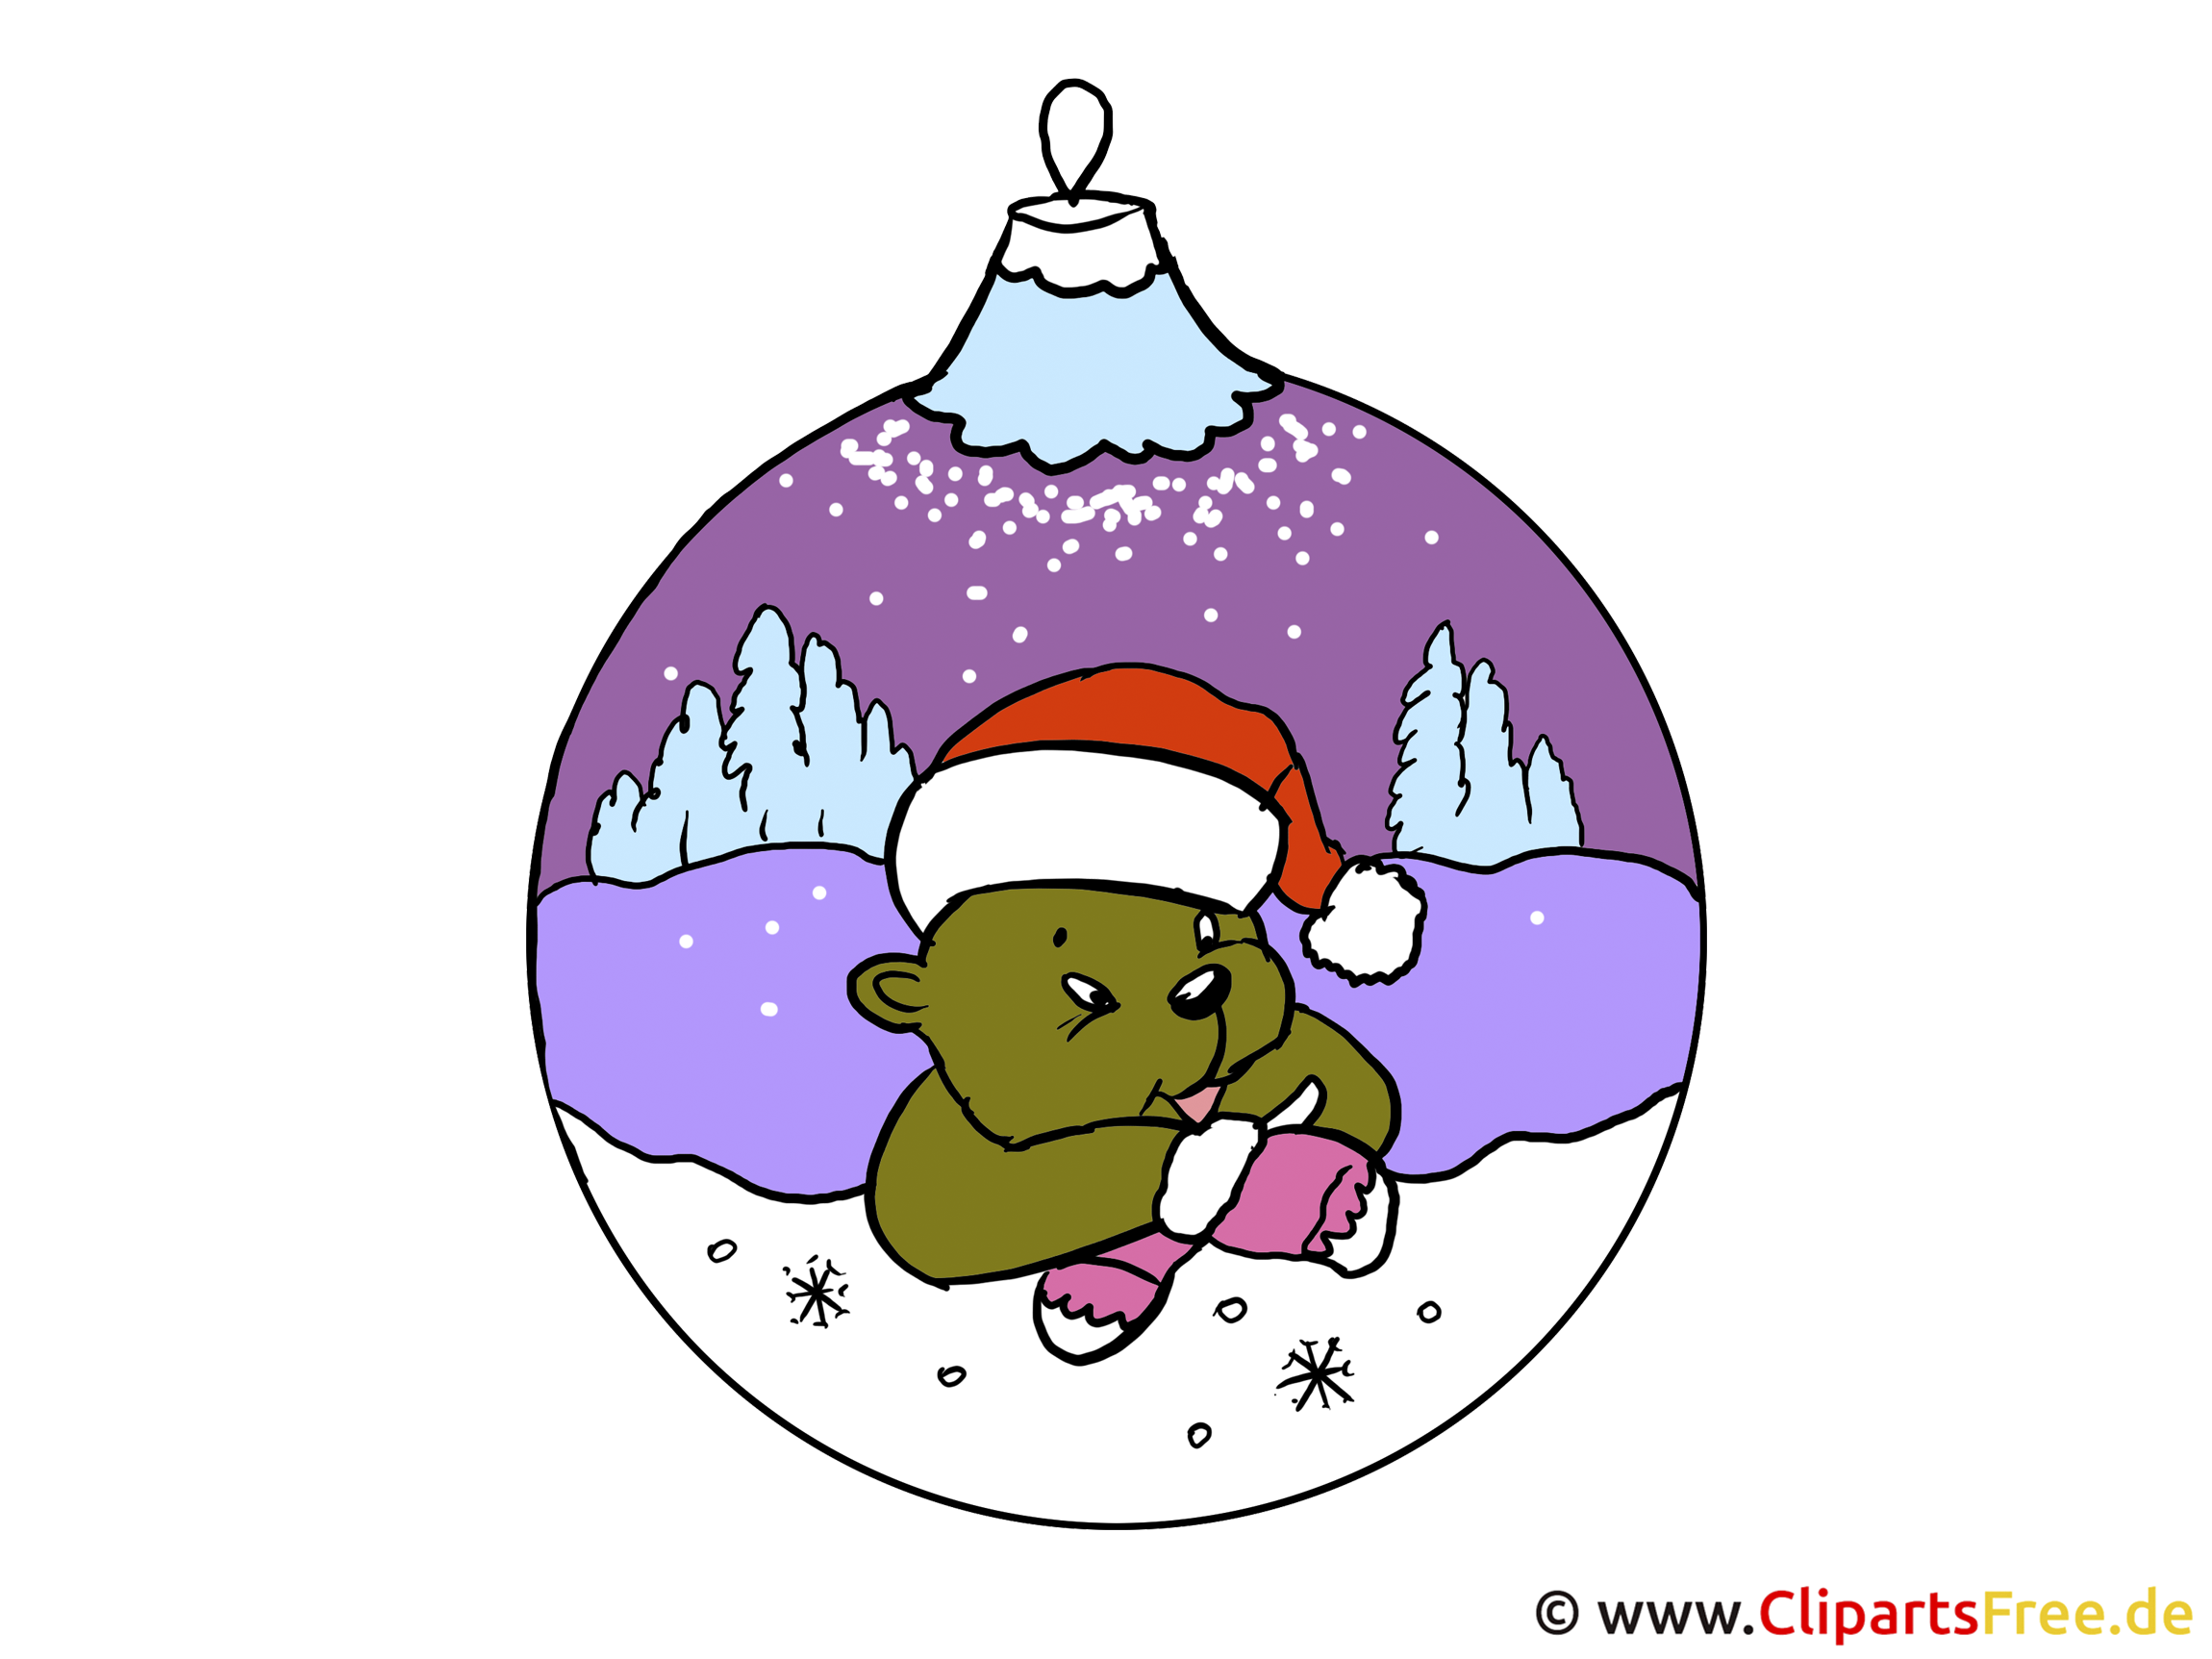 clipart kostenlos weihnachtsmotive - photo #1